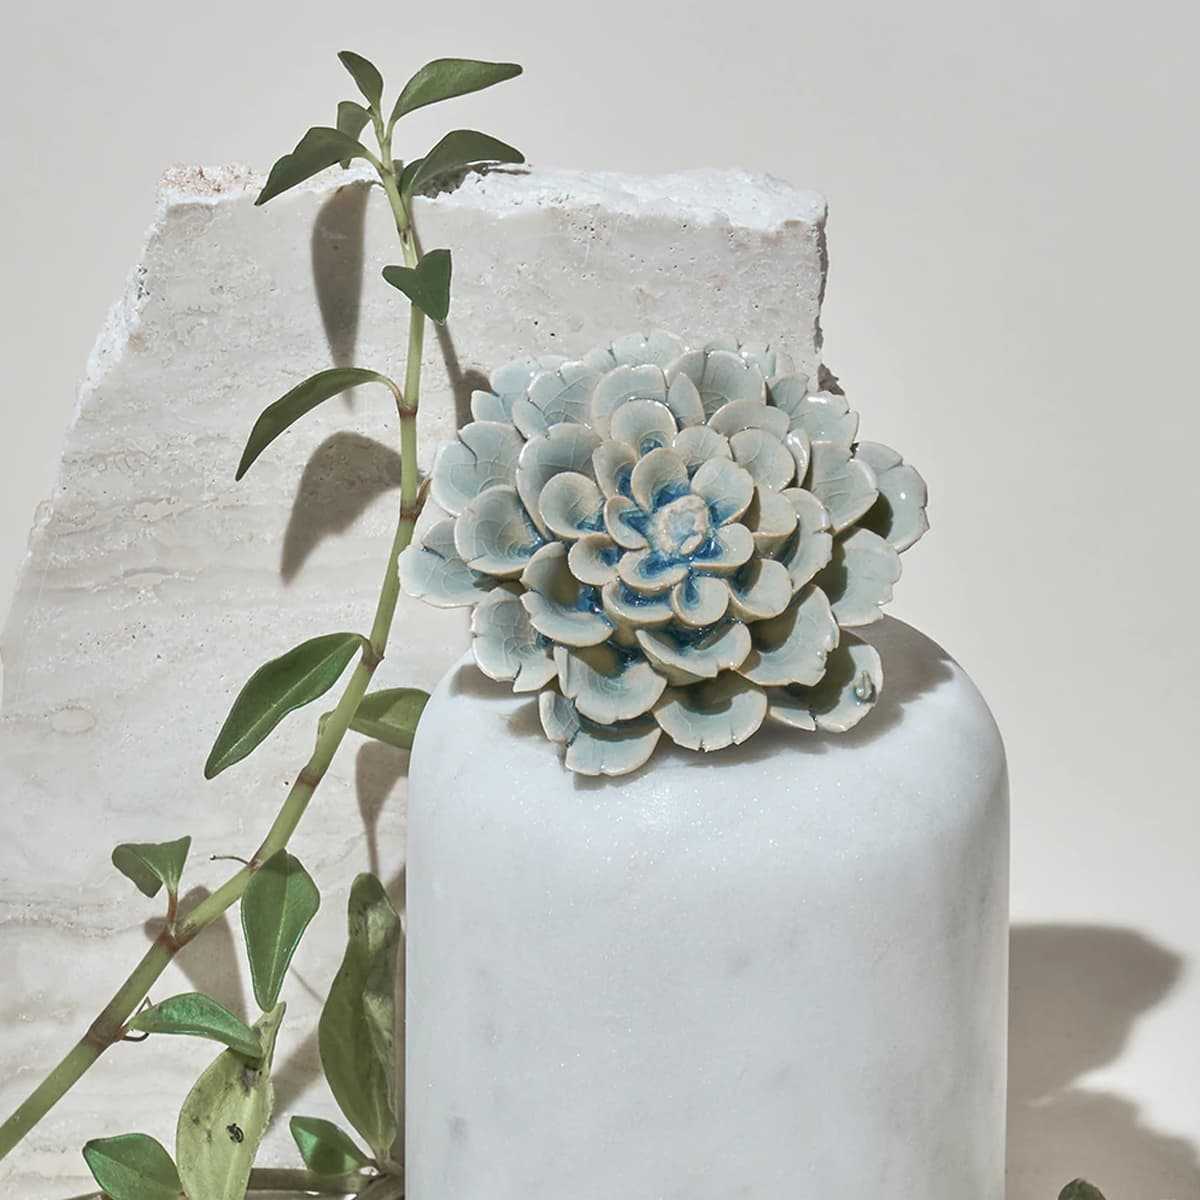 Chive corail en céramique fleur ** NOUVEAU ** avec Free p&p objet d 